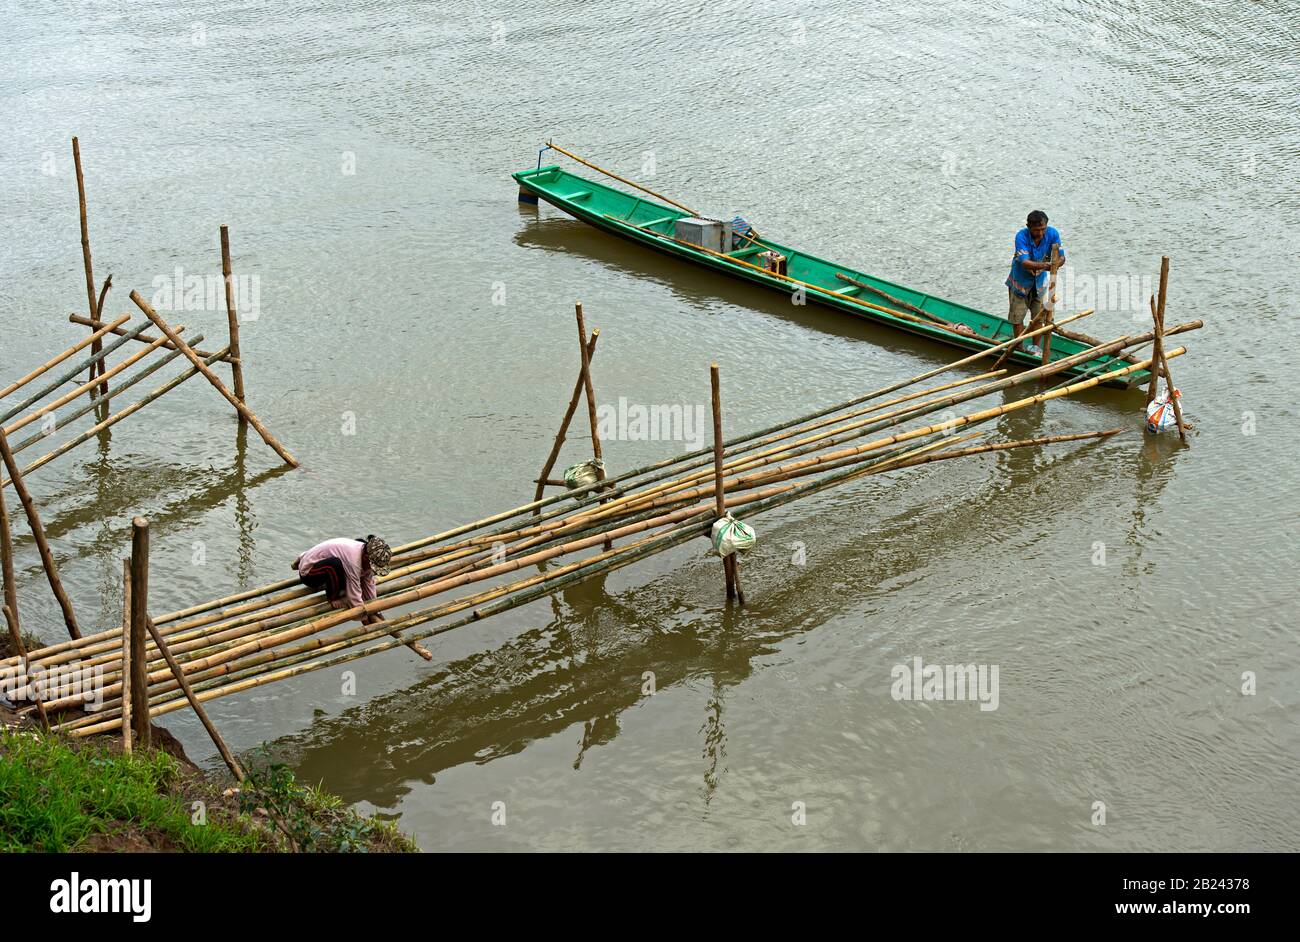 Construction of a bamboo bridge across the Nam Khan river, Luang Prabang, Laos Stock Photo